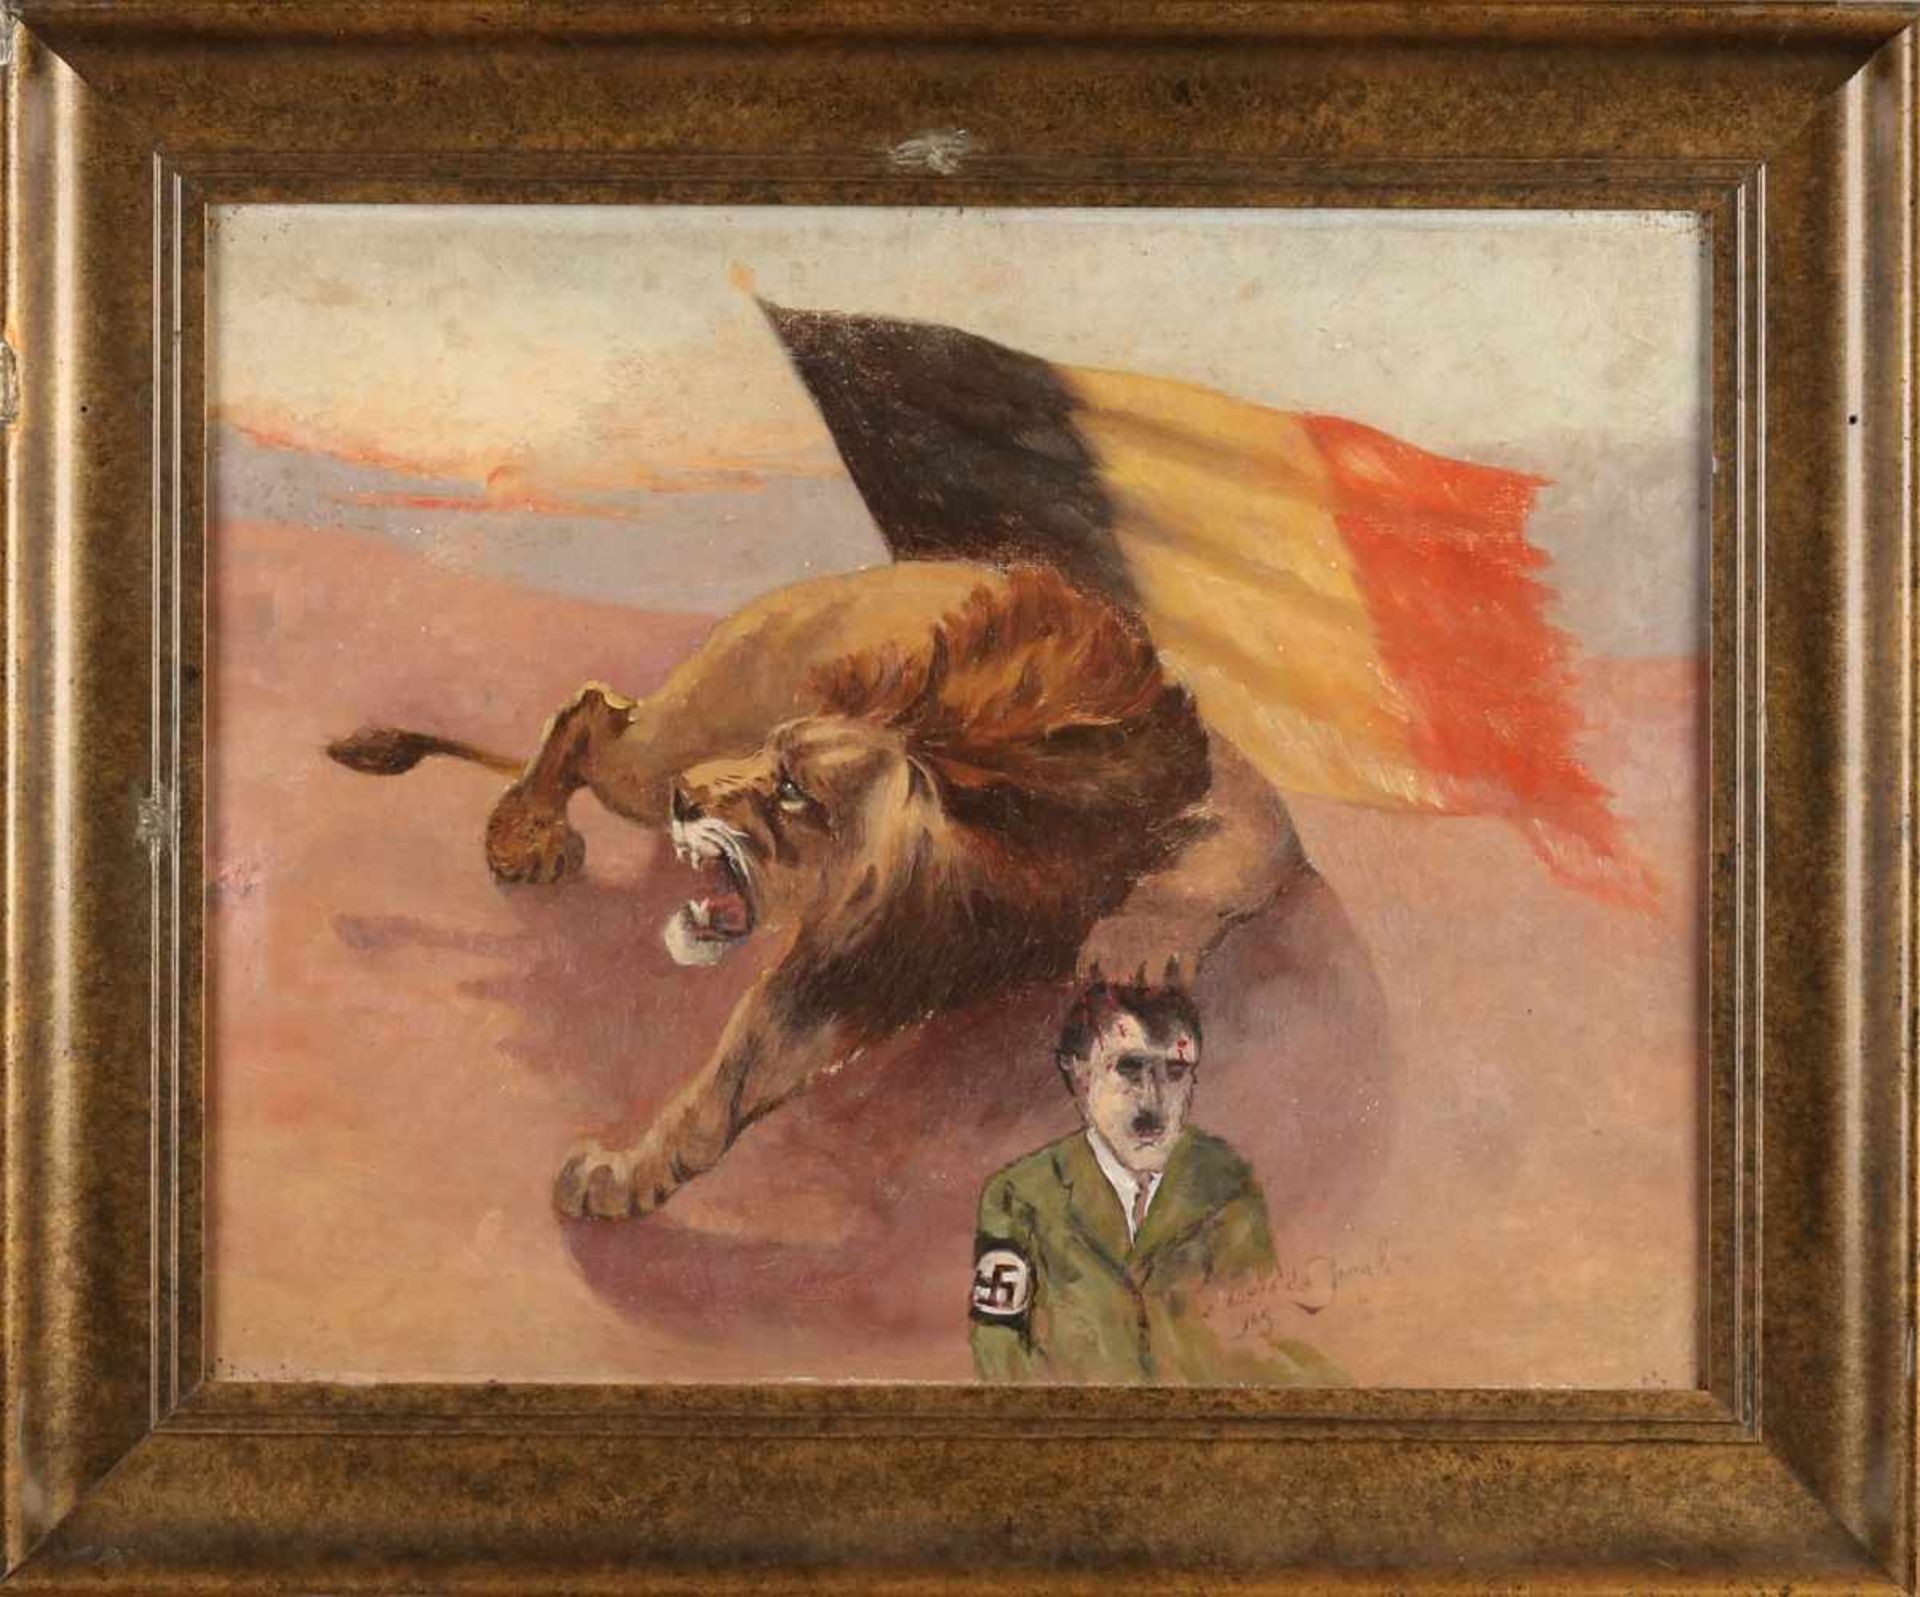 zurÃ¼ckgezogen / withdrawn---Louis de Jongh, 1945. Liberation Painting with Dutch lion and Adolf